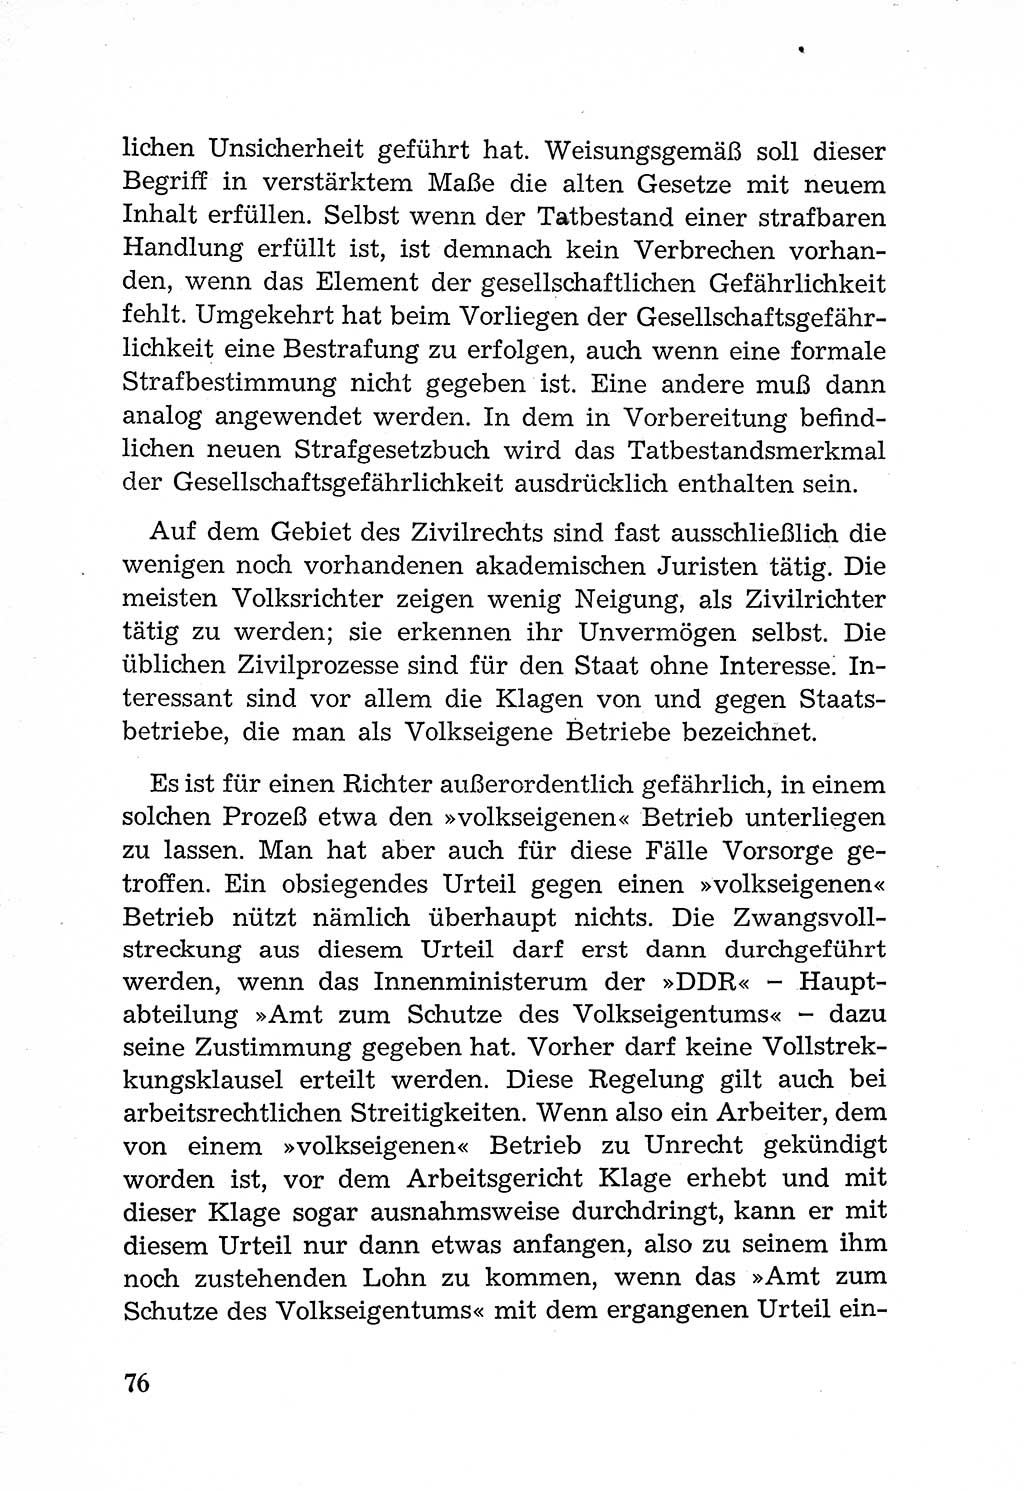 Rechtsstaat in zweierlei Hinsicht, Untersuchungsausschuß freiheitlicher Juristen (UfJ) [Bundesrepublik Deutschland (BRD)] 1956, Seite 76 (R.-St. UfJ BRD 1956, S. 76)